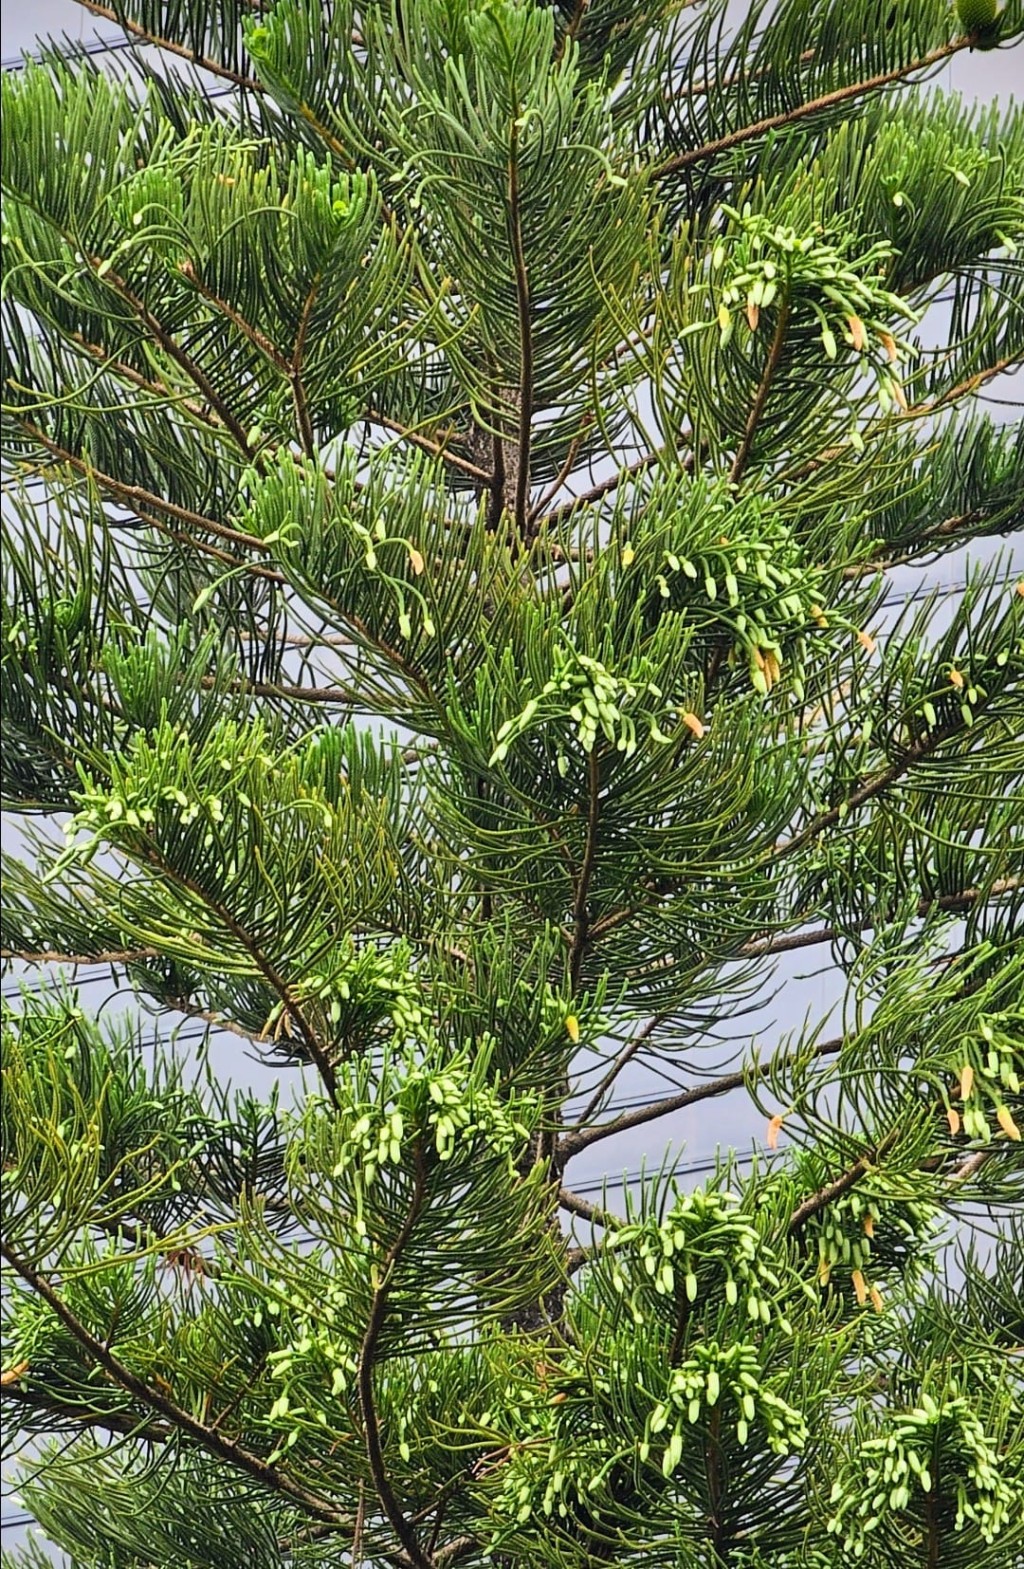 异叶南洋杉为常绿大乔木。网图